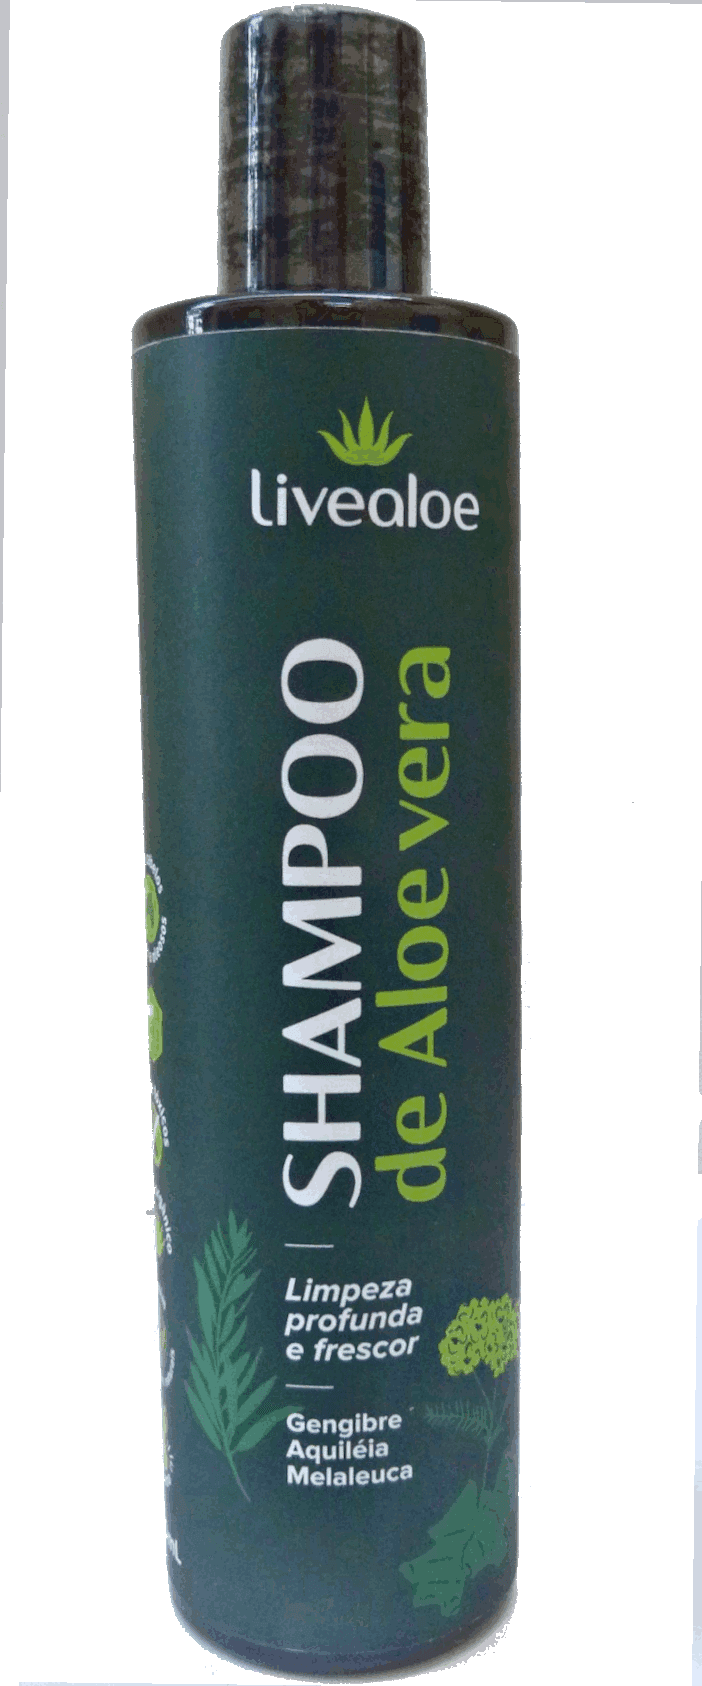 Shampoo Aloe Vera